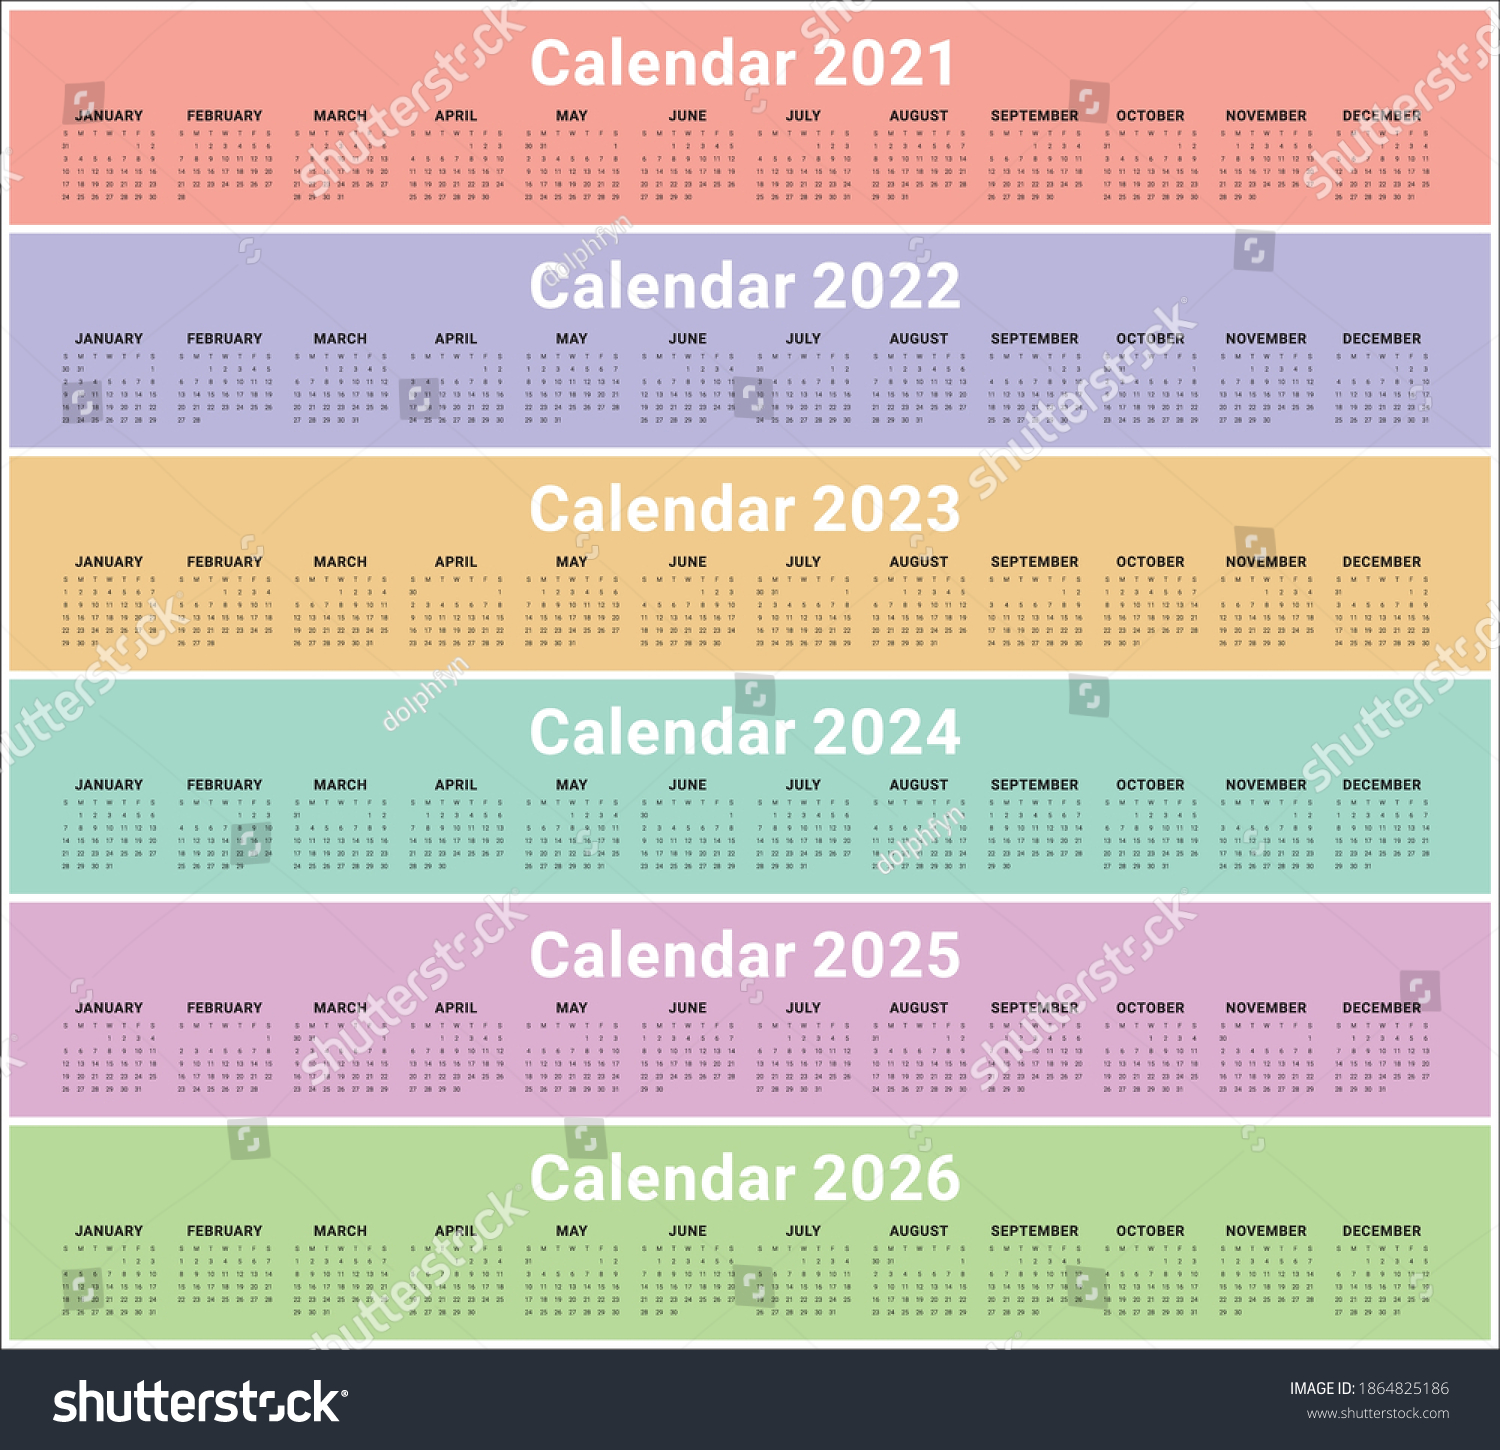 Year 2021 2022 2023 2024 2025 1864825186 Shutterstock